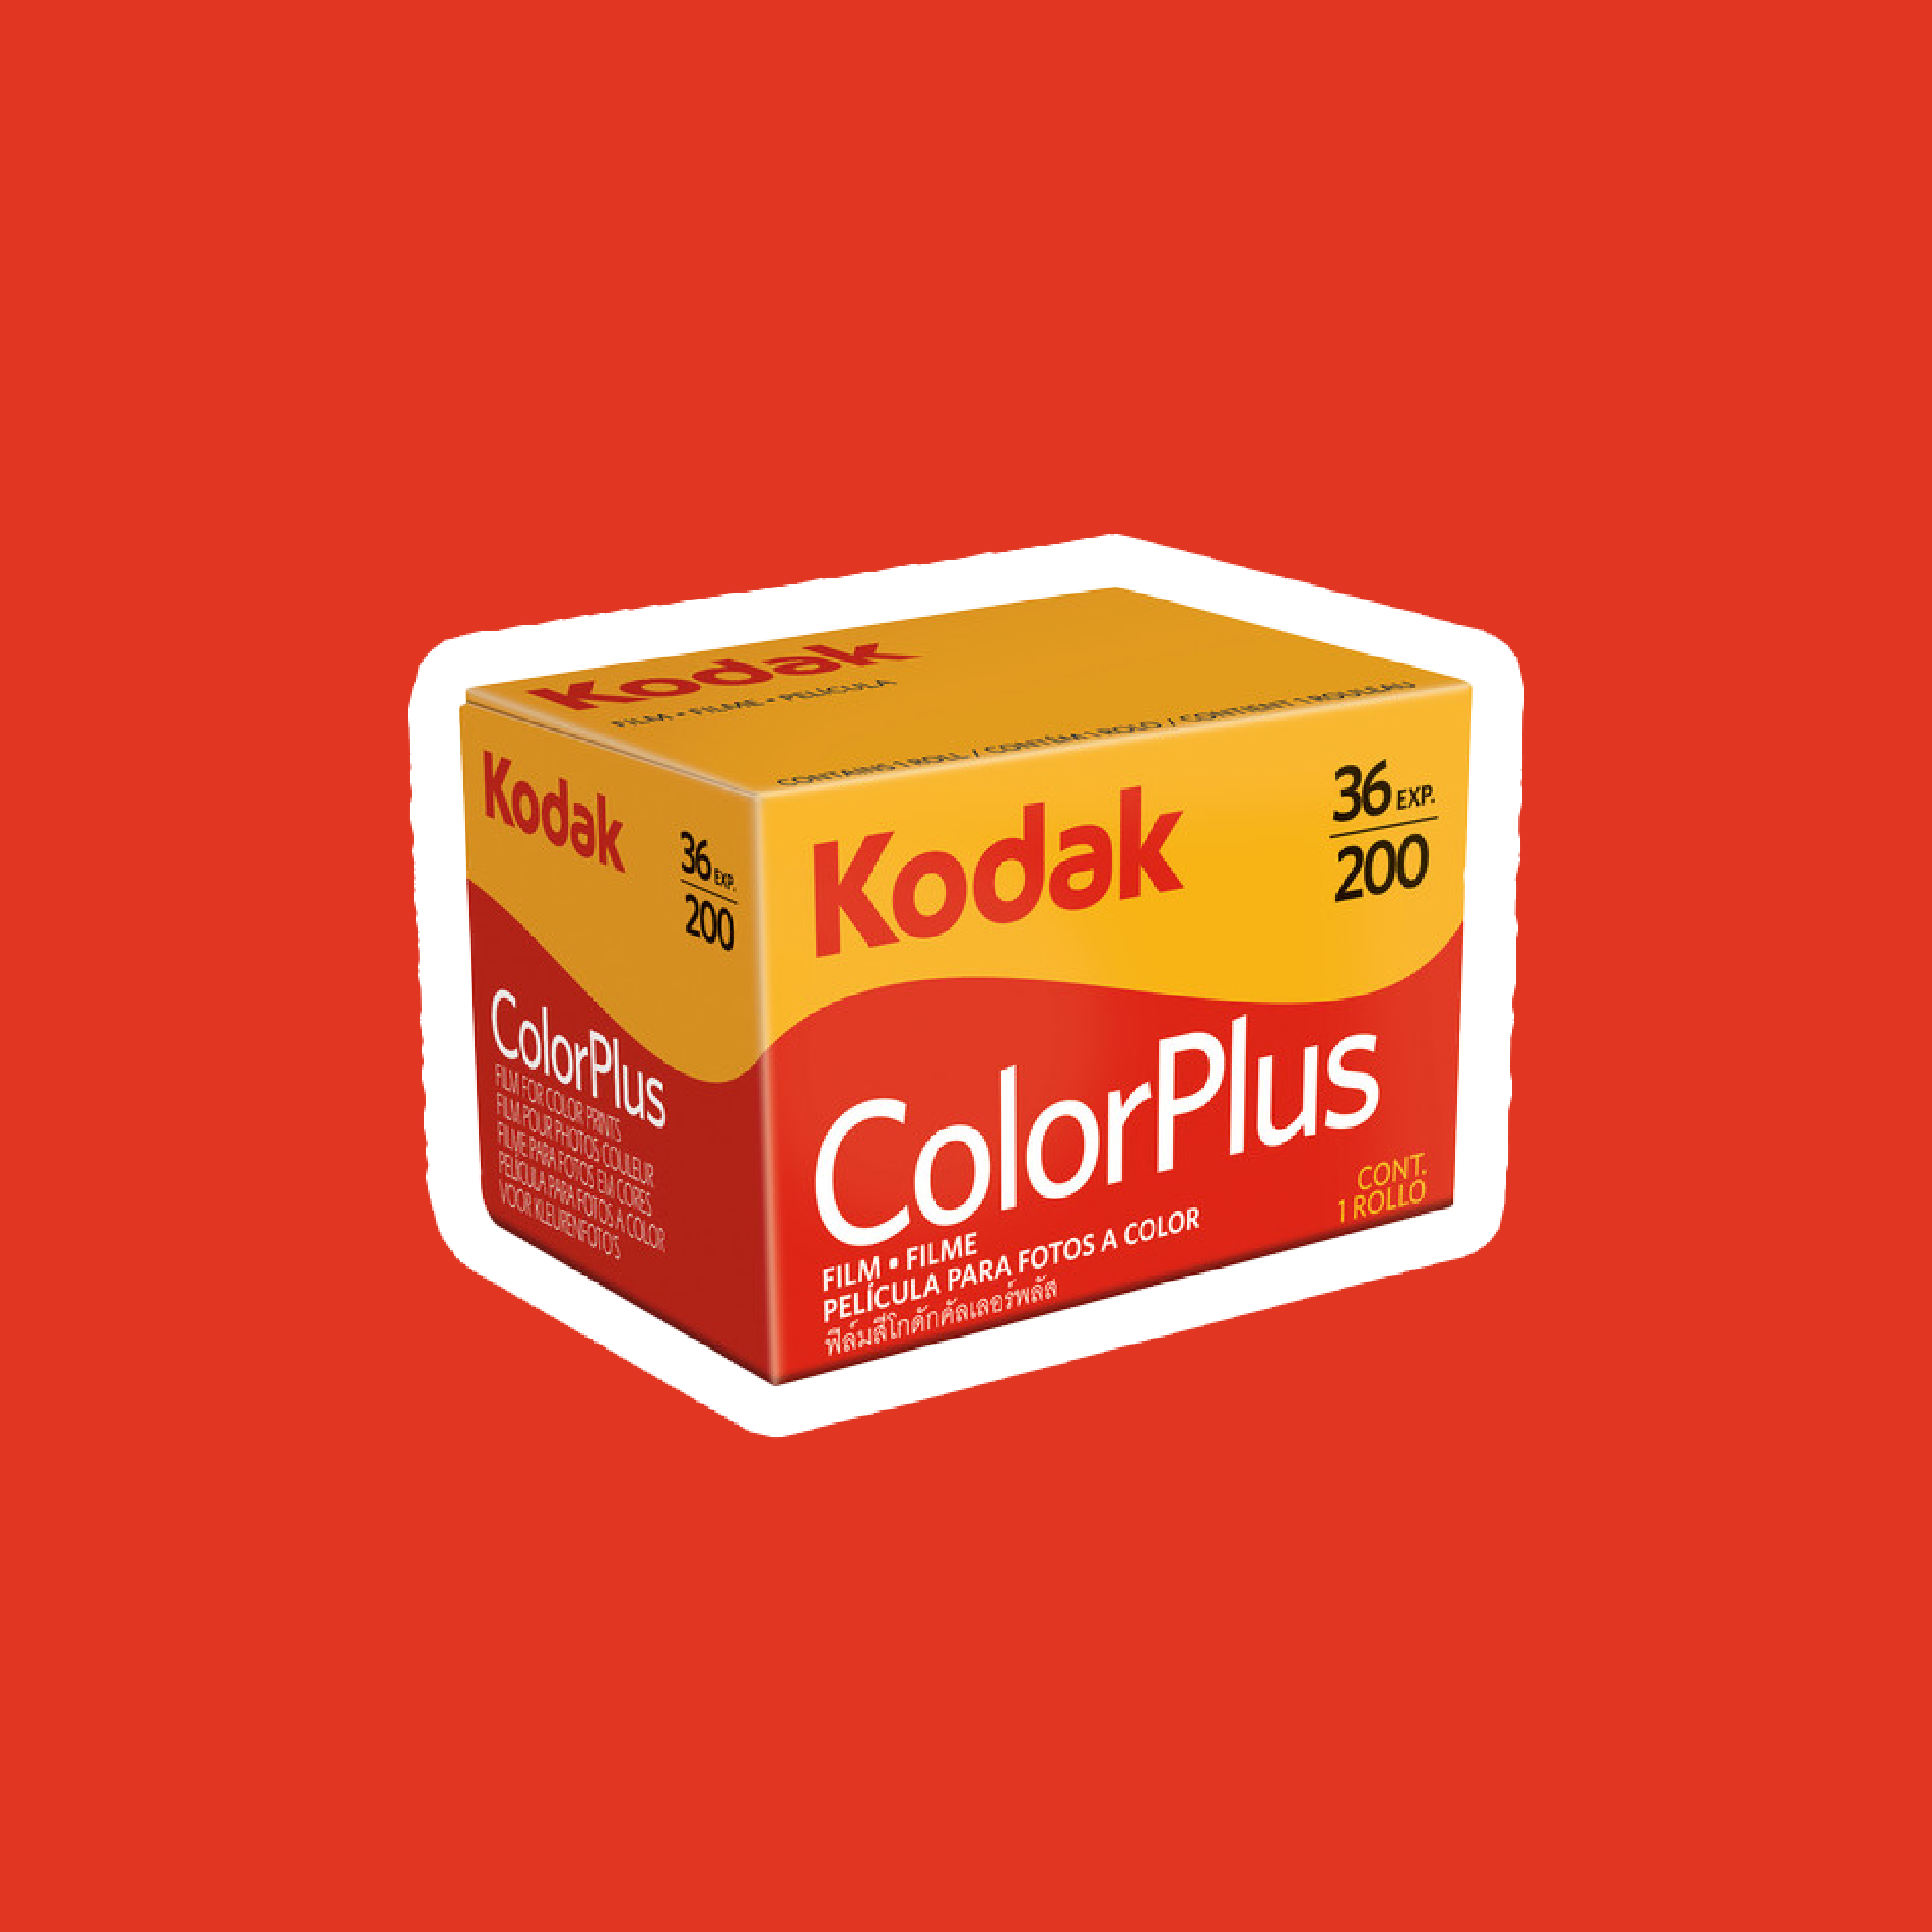 往復送料無料 Kodak ColorPlus 200 36枚撮り 2本セット savingssafari.com